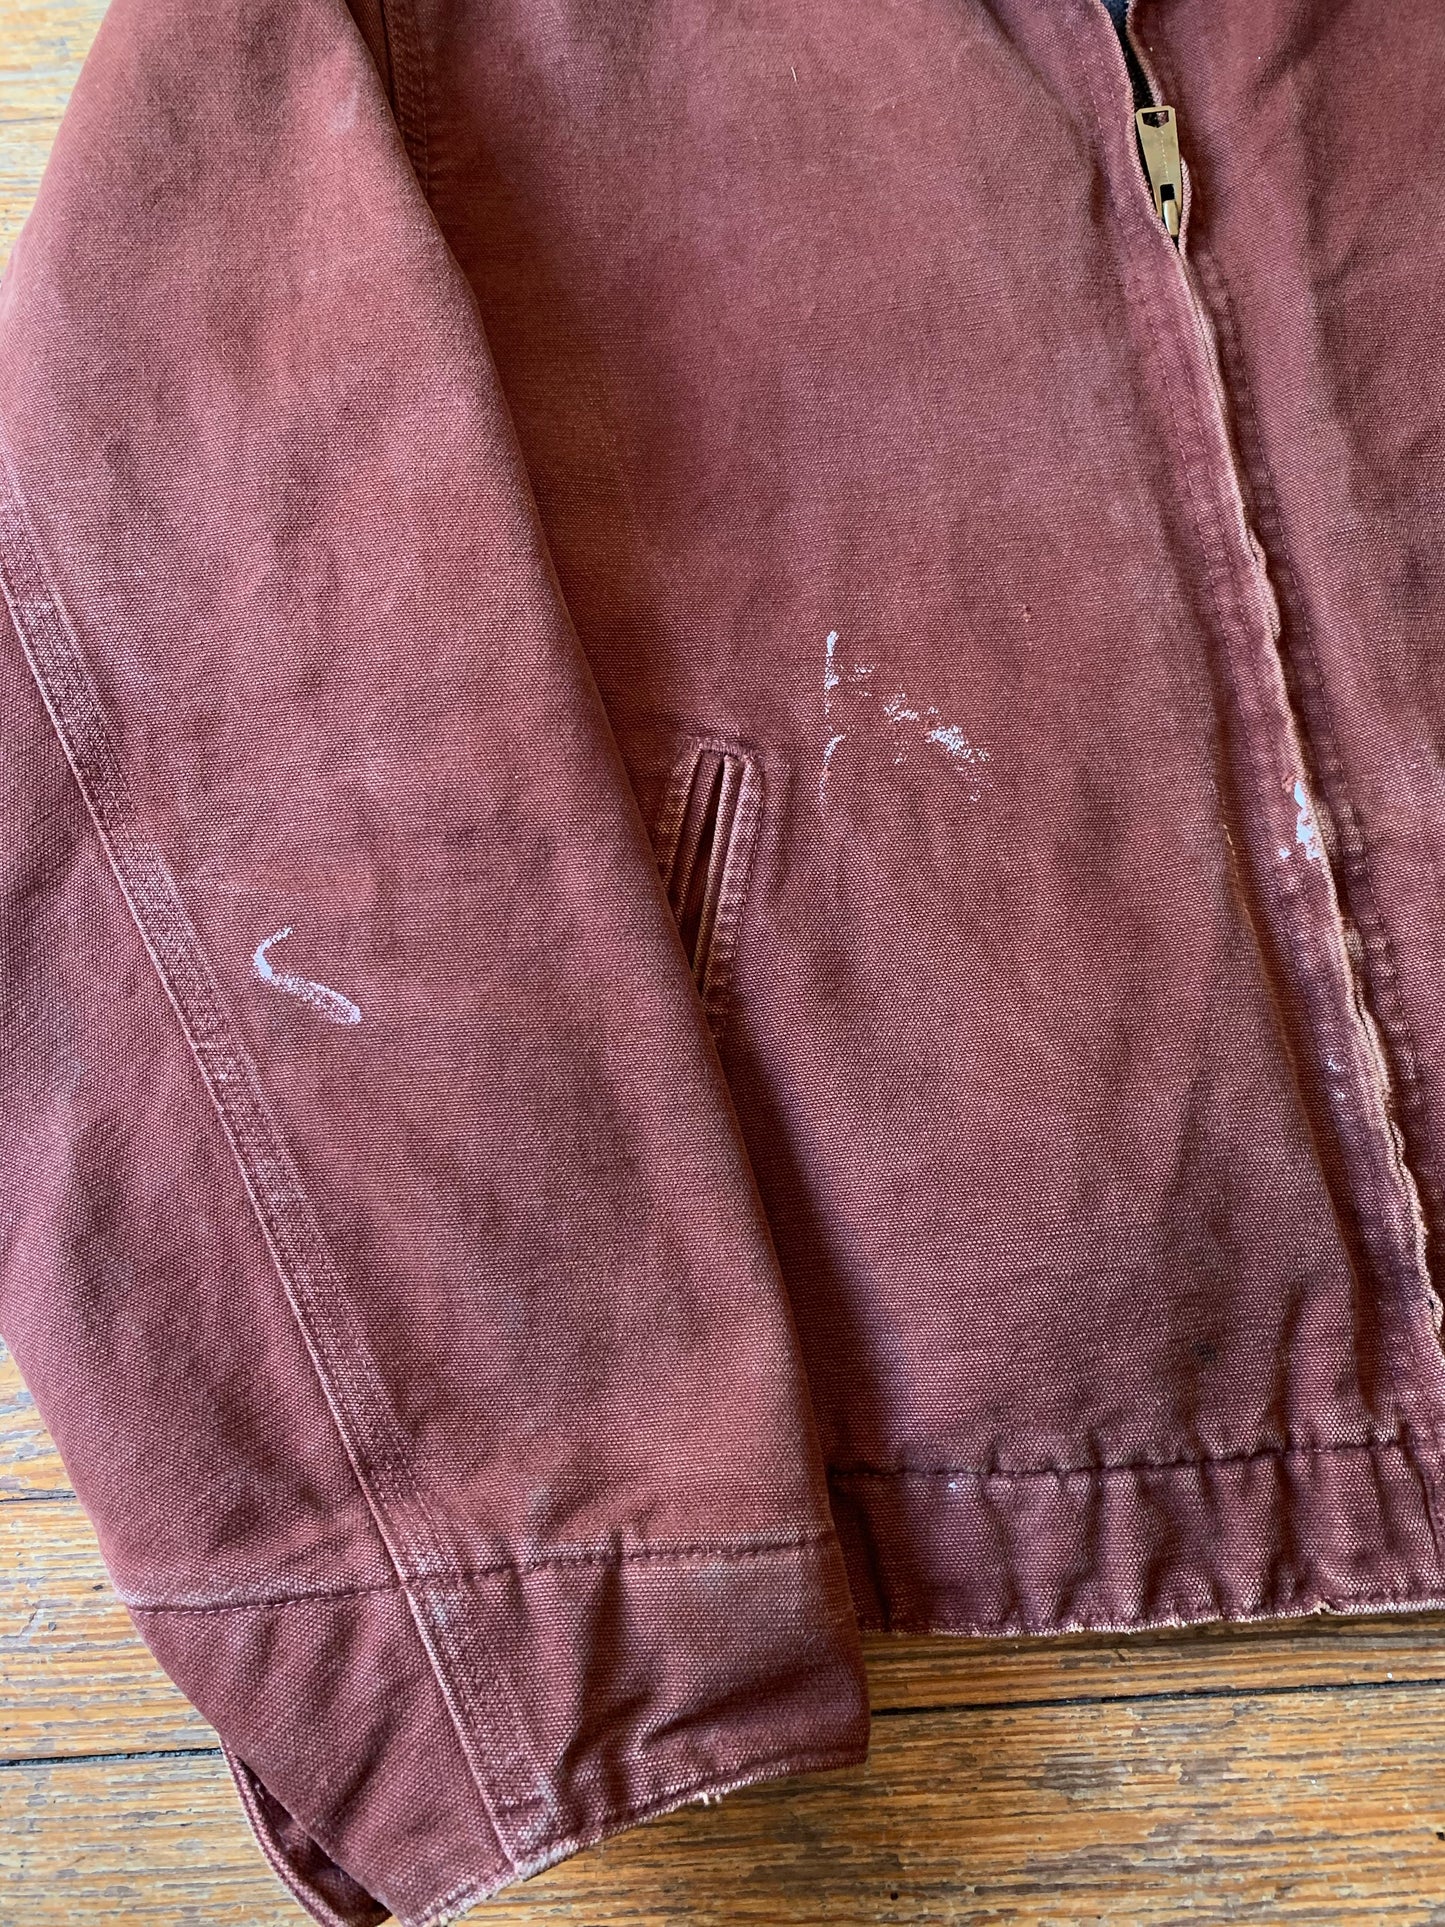 Pre-Loved Rusty Brown Carhartt Zip-Up Utility Jacket